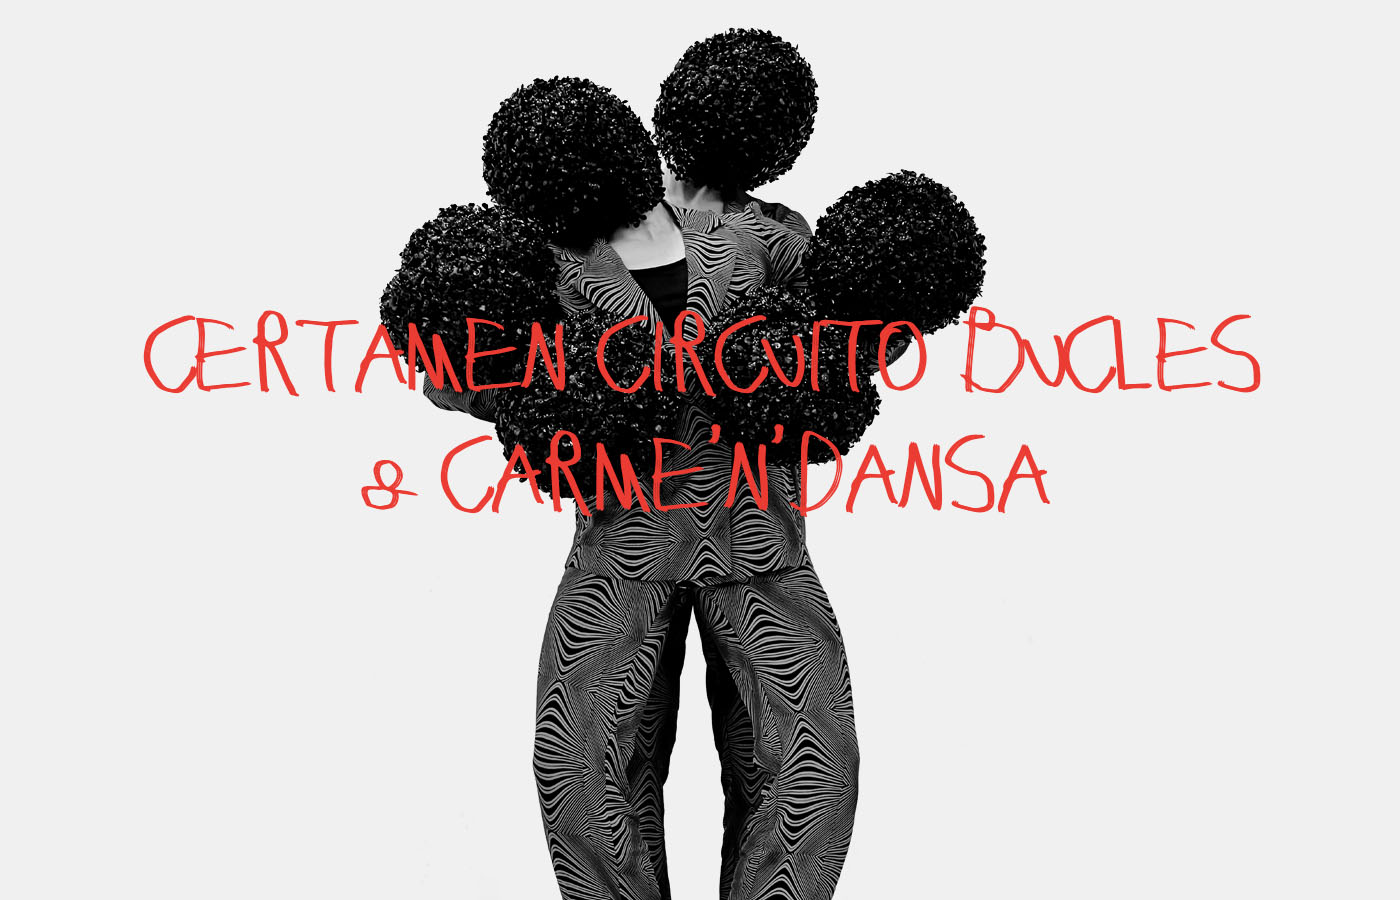 certamen-coreografico-circuito-bucles-carmen-dansa